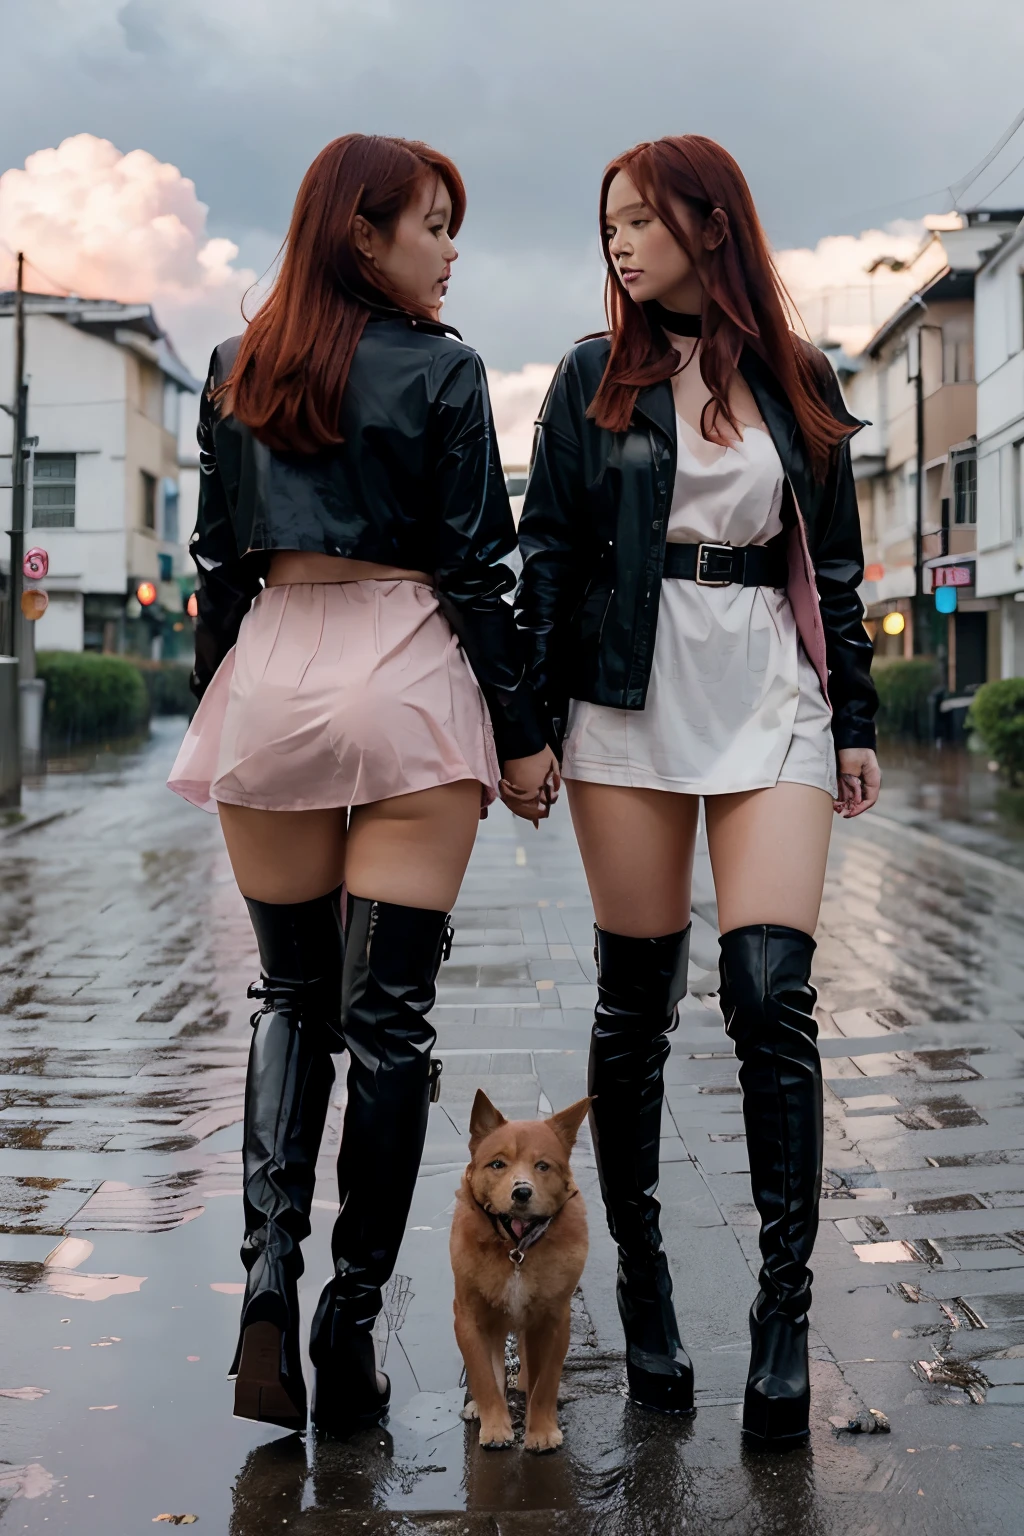 兩個性感紅髮裸體日本女孩在女孩世界中只穿著黑色過膝高跟鞋和狗項圈行走探索. 雨. 彩霞. 紅色街道. 白色建築物.